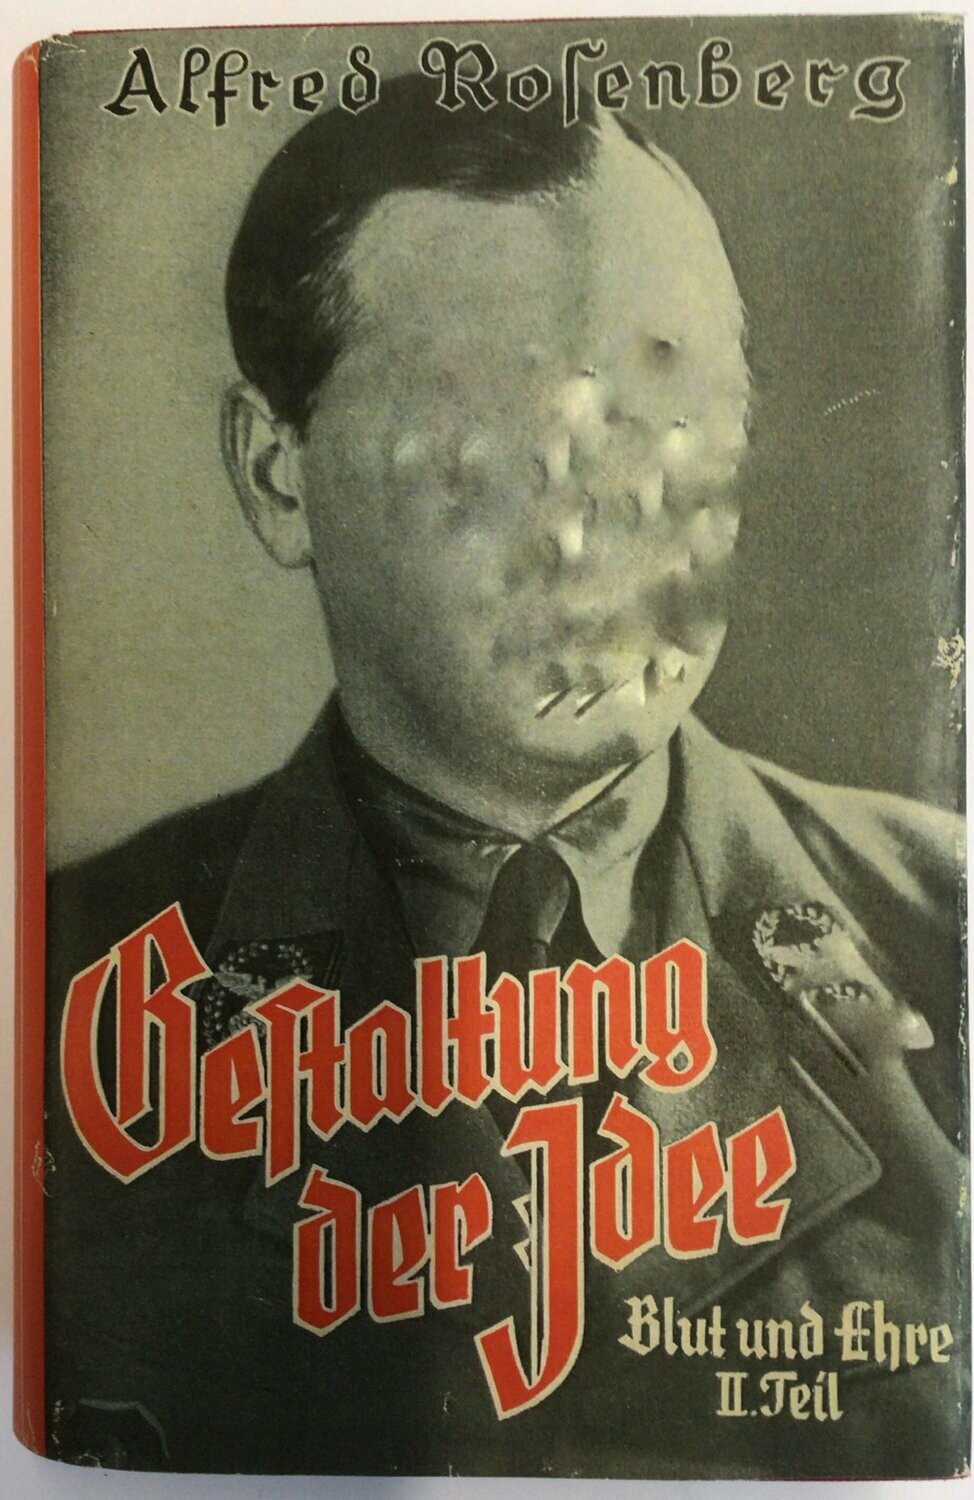 Gestaltung der Idee - Blut und Ehre Band 2 - Halbleinenausgabe aus dem Jahr 1942 (13. Auflage) mit Schutzumschlag (Kopie)